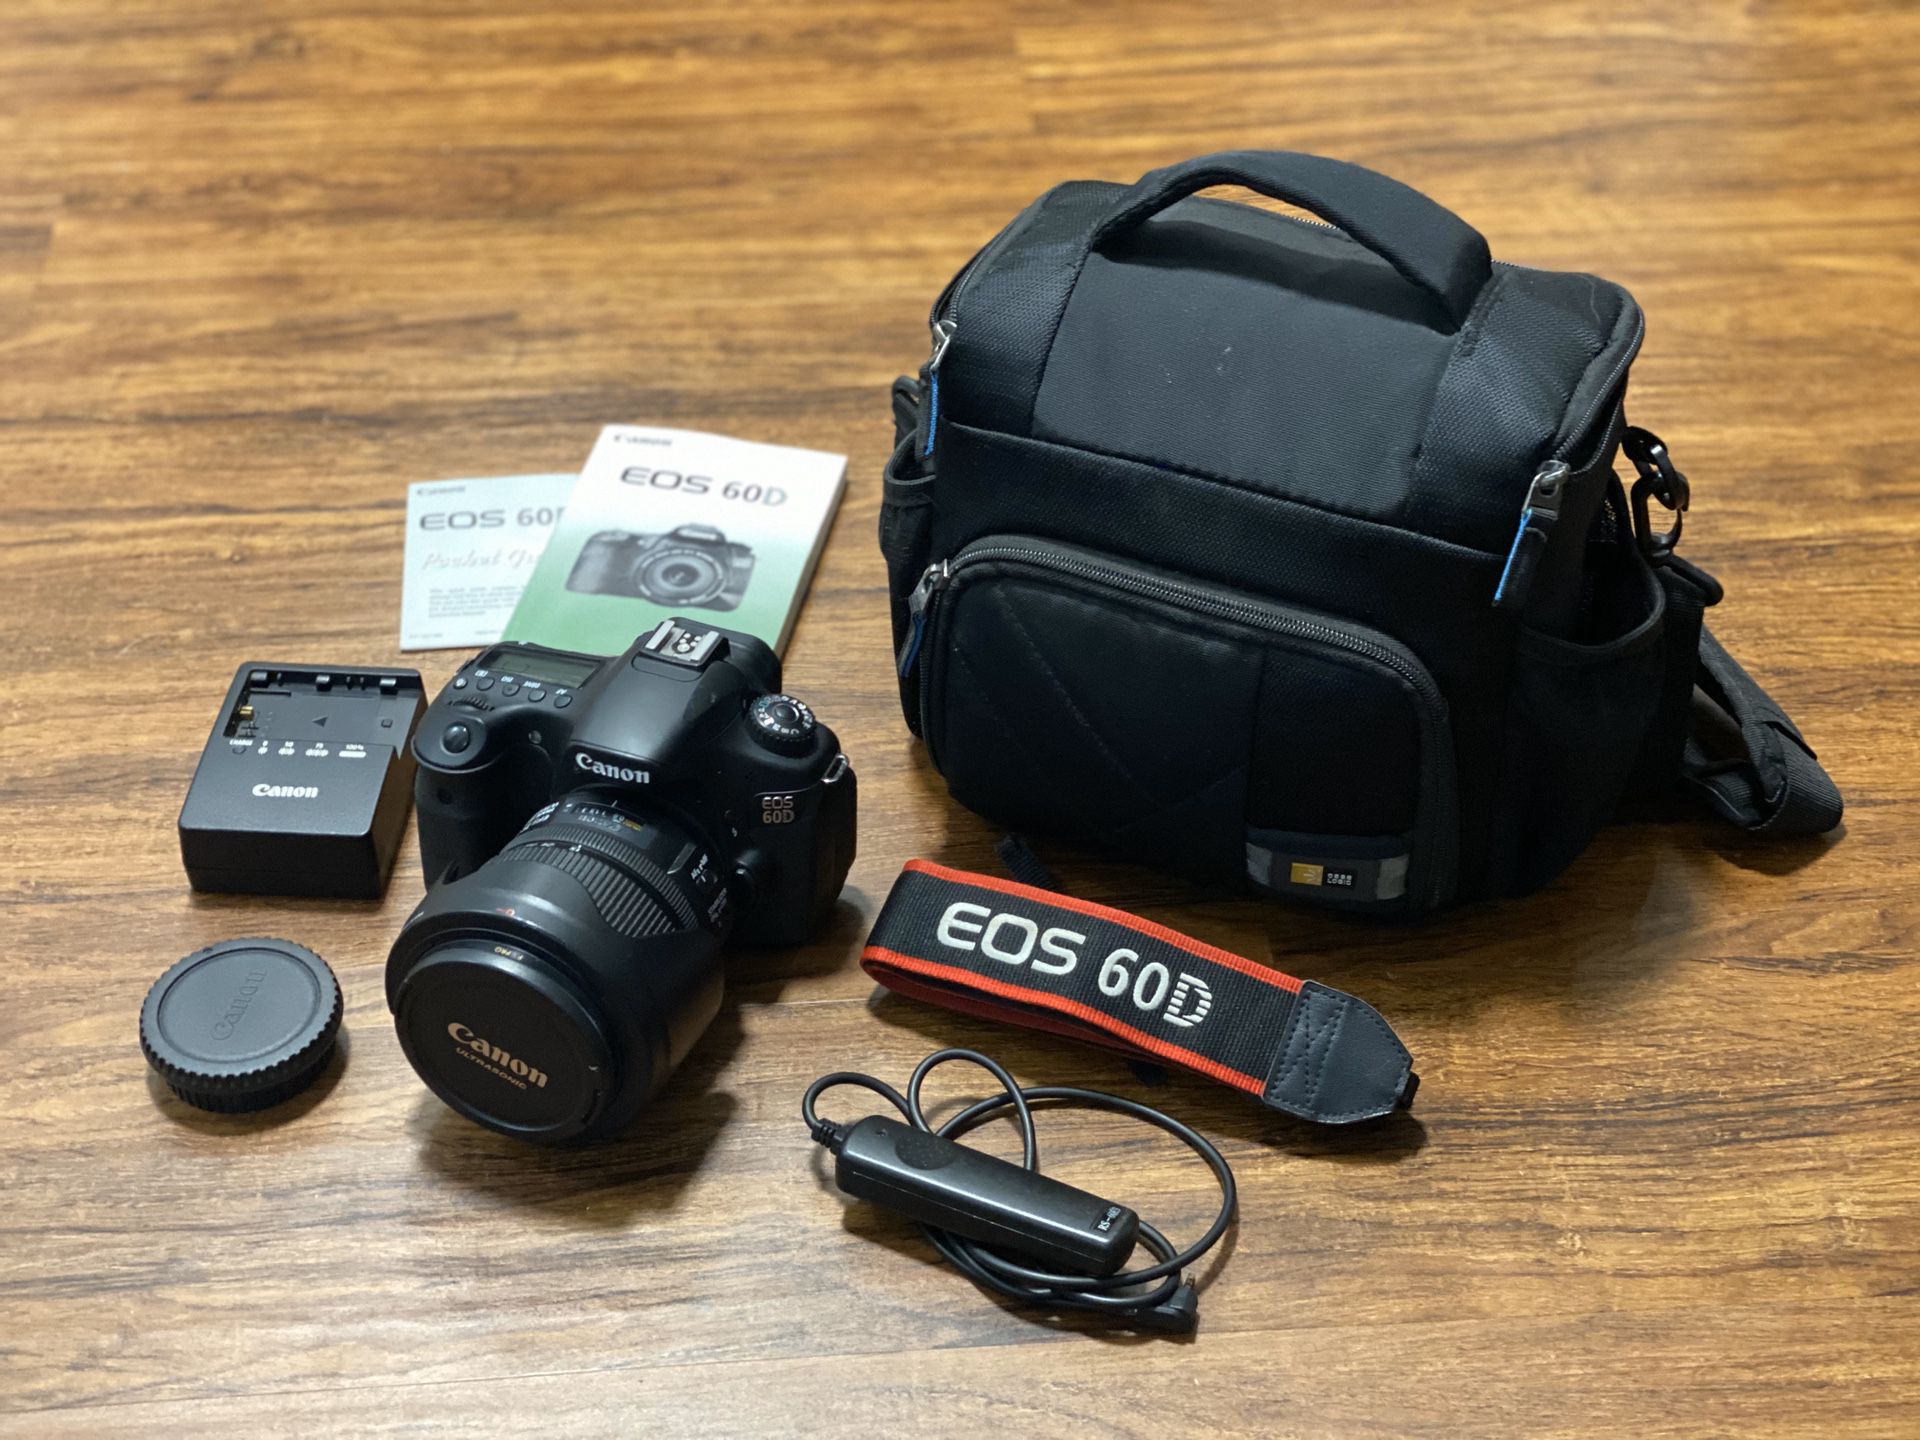 Canon 60D DSLR Camera Kit/Bundle